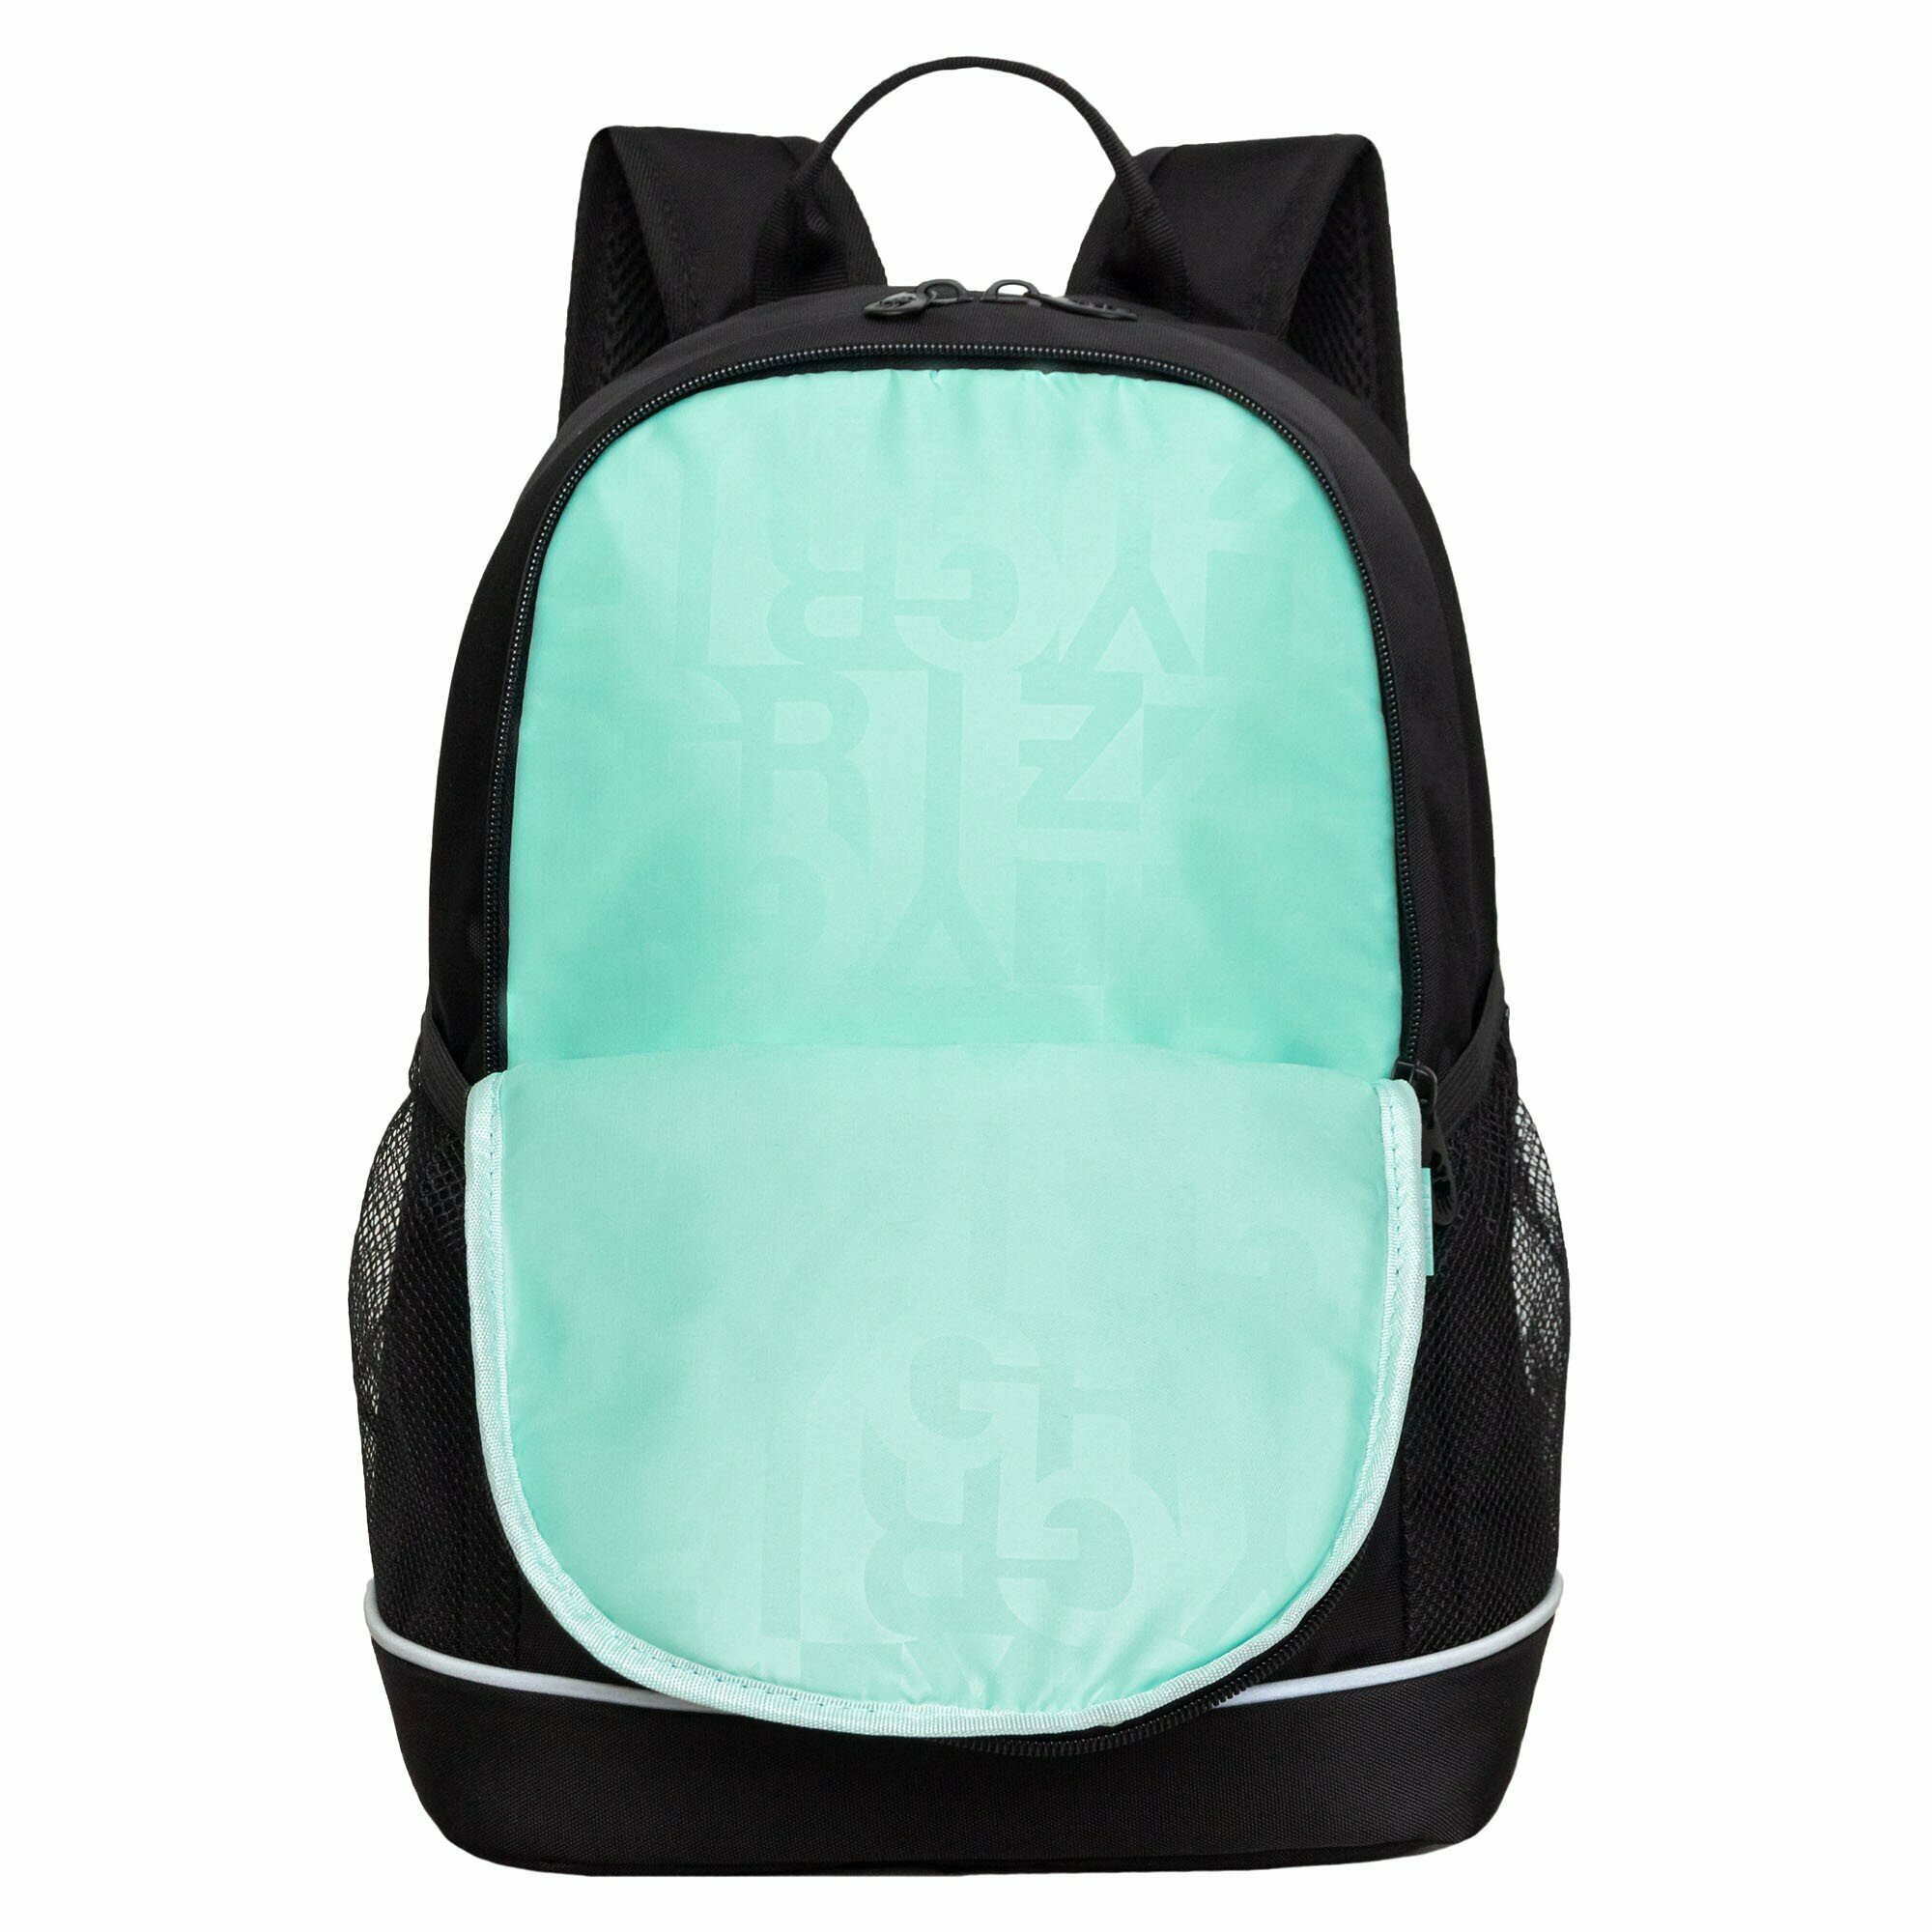 Рюкзак школьный GRIZZLY с карманом для ноутбука 13", жесткой спинкой, двумя отделениями, для девочки RG-463-3/1